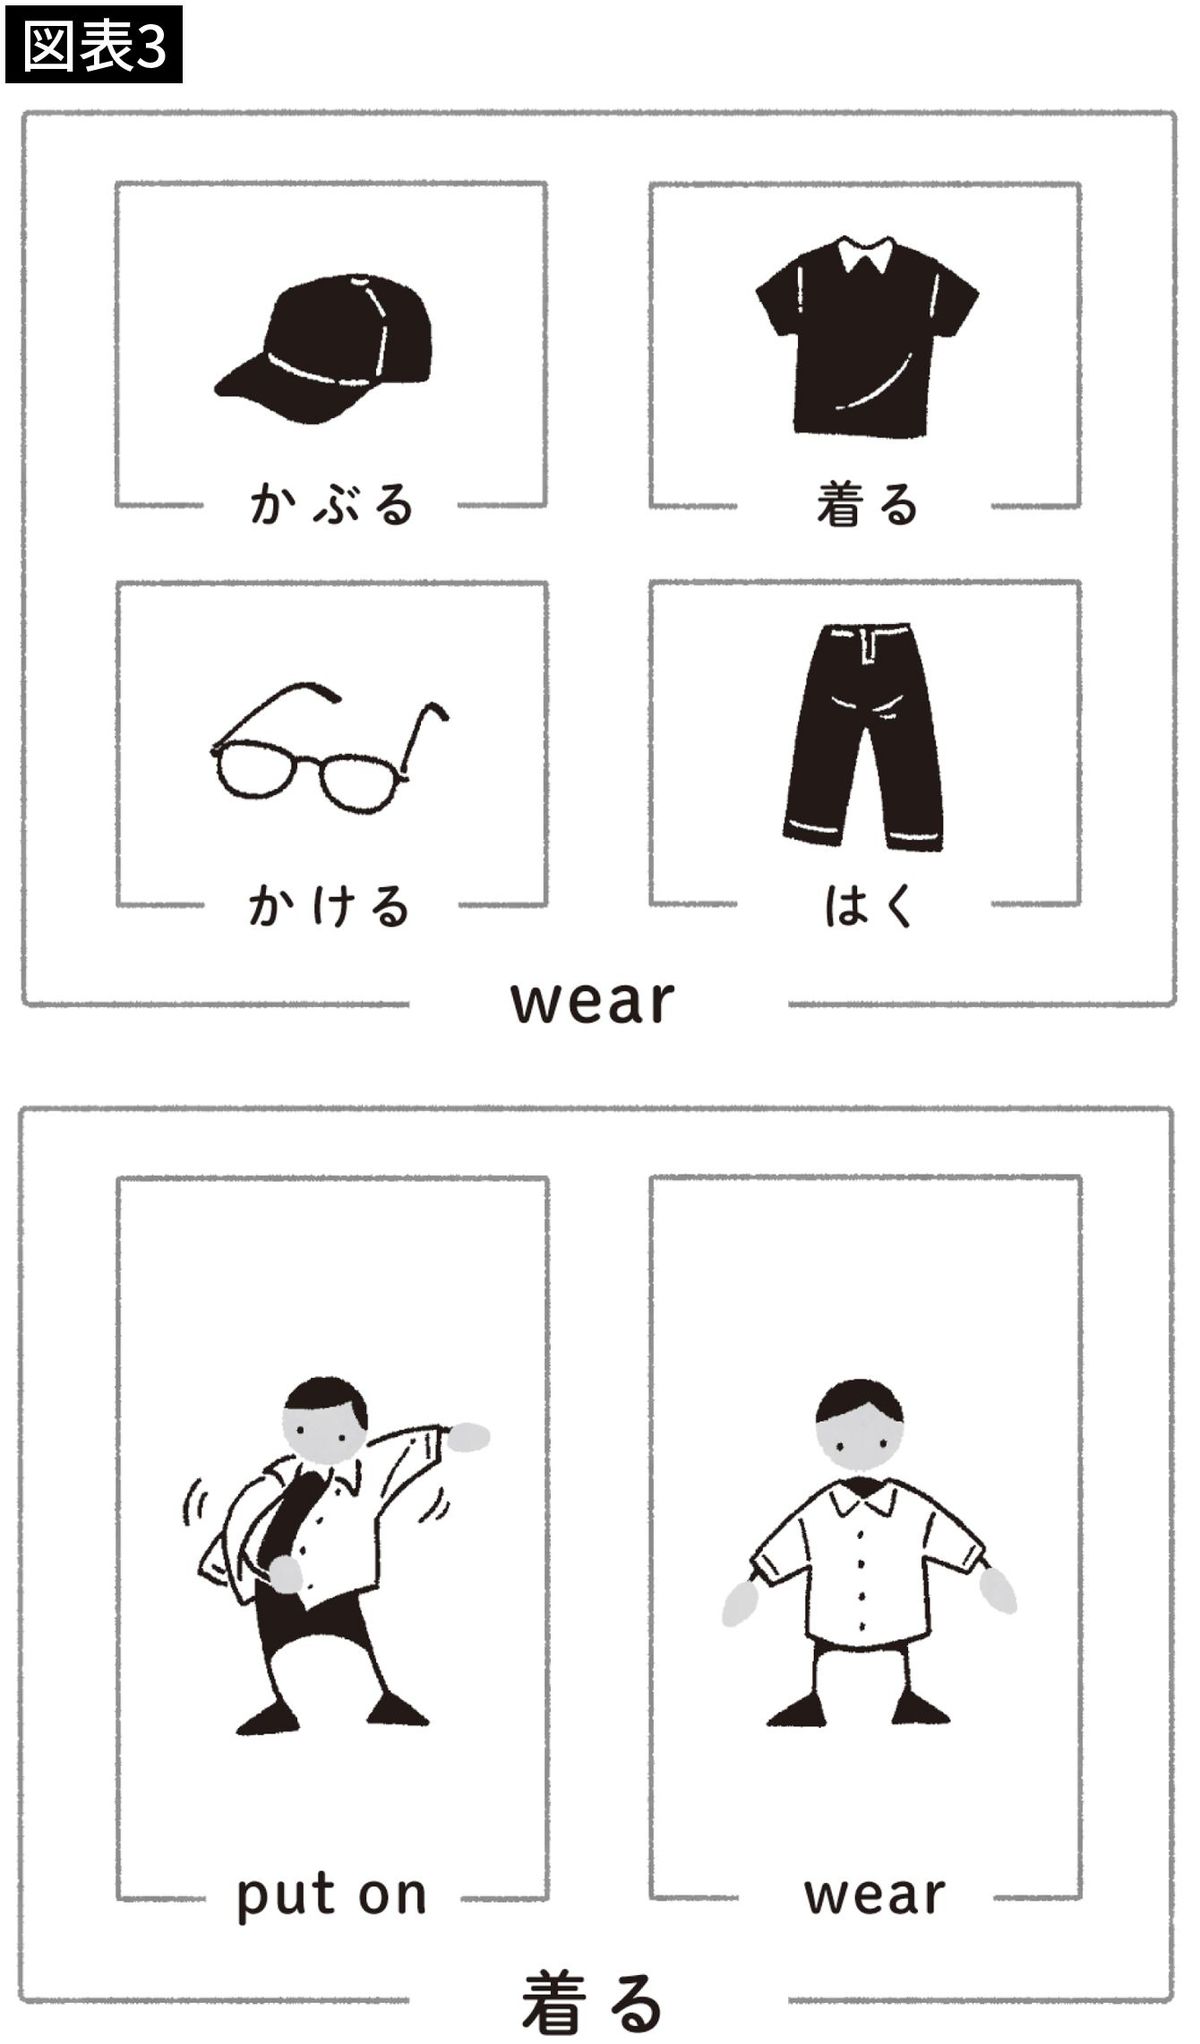 【図表3】実は「着る」と「wear」は使える範囲が違う